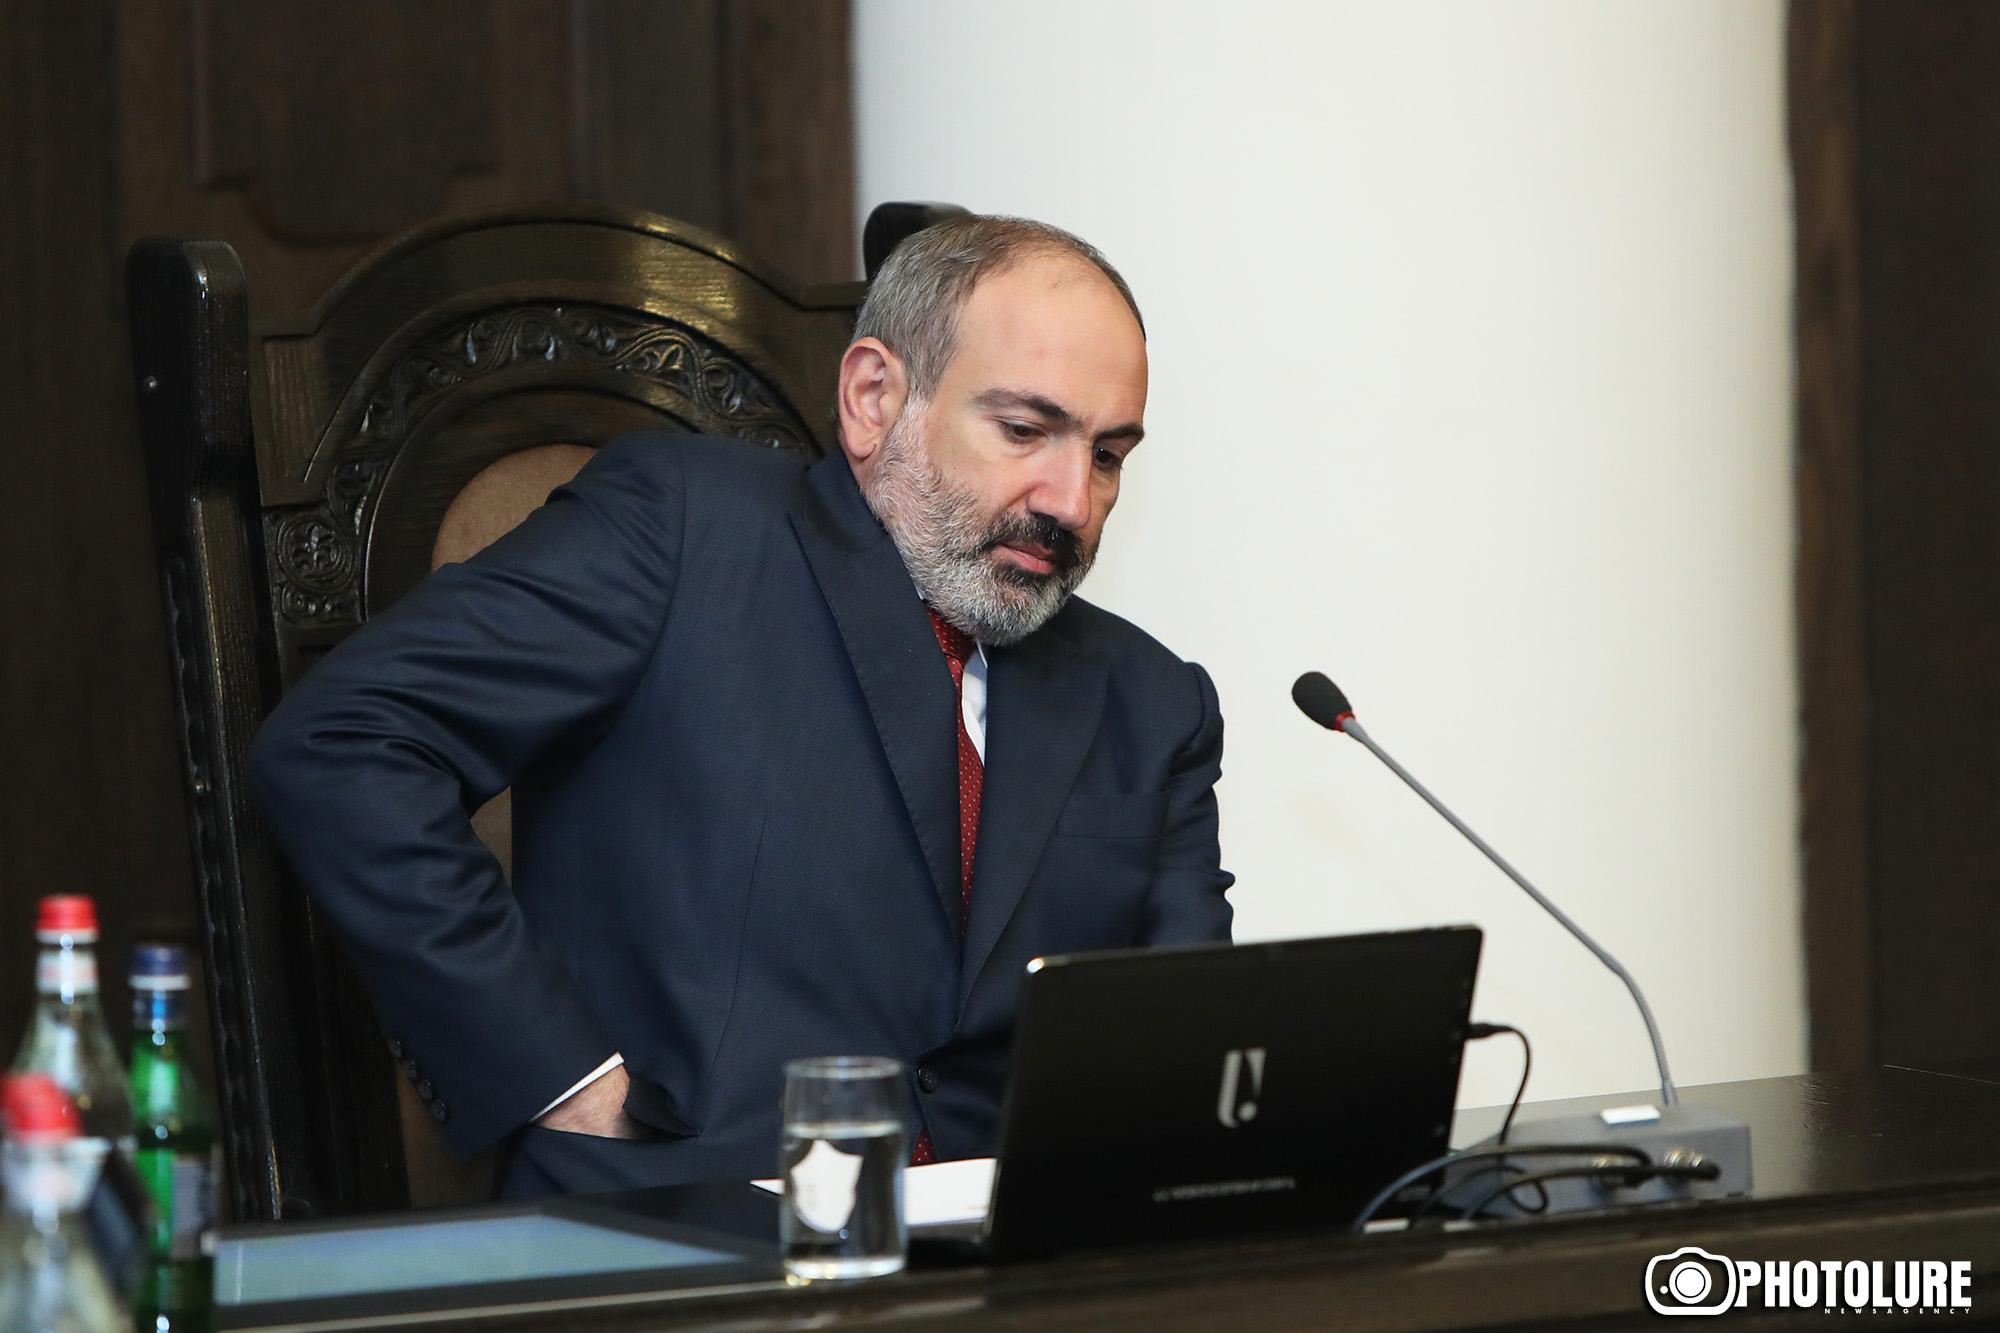 Կառավարությունը որոշեց արտակարգ դրություն հայտարարել Հայաստանի ամբողջ տարածքում